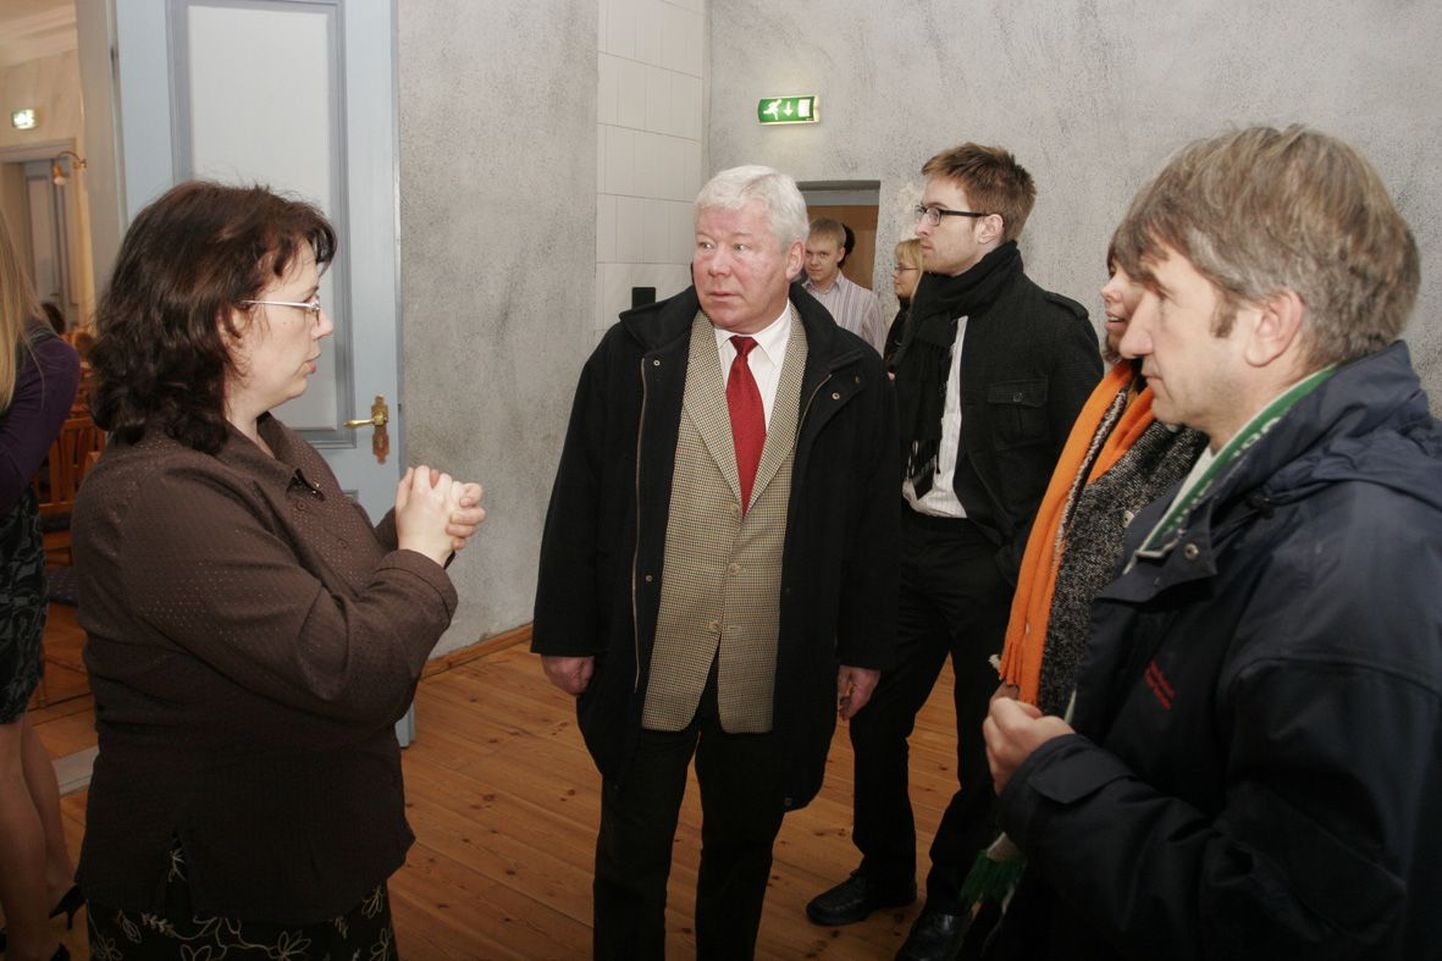 Tammsaare muuseumi Vargamäe juhataja Aune Suve (vasakul) tutvustab Albu mõisat Norra suursaadikule Stein Vegan Hagenile (keskel), kes kiitis vana puithoone kaunist väljanägemist.